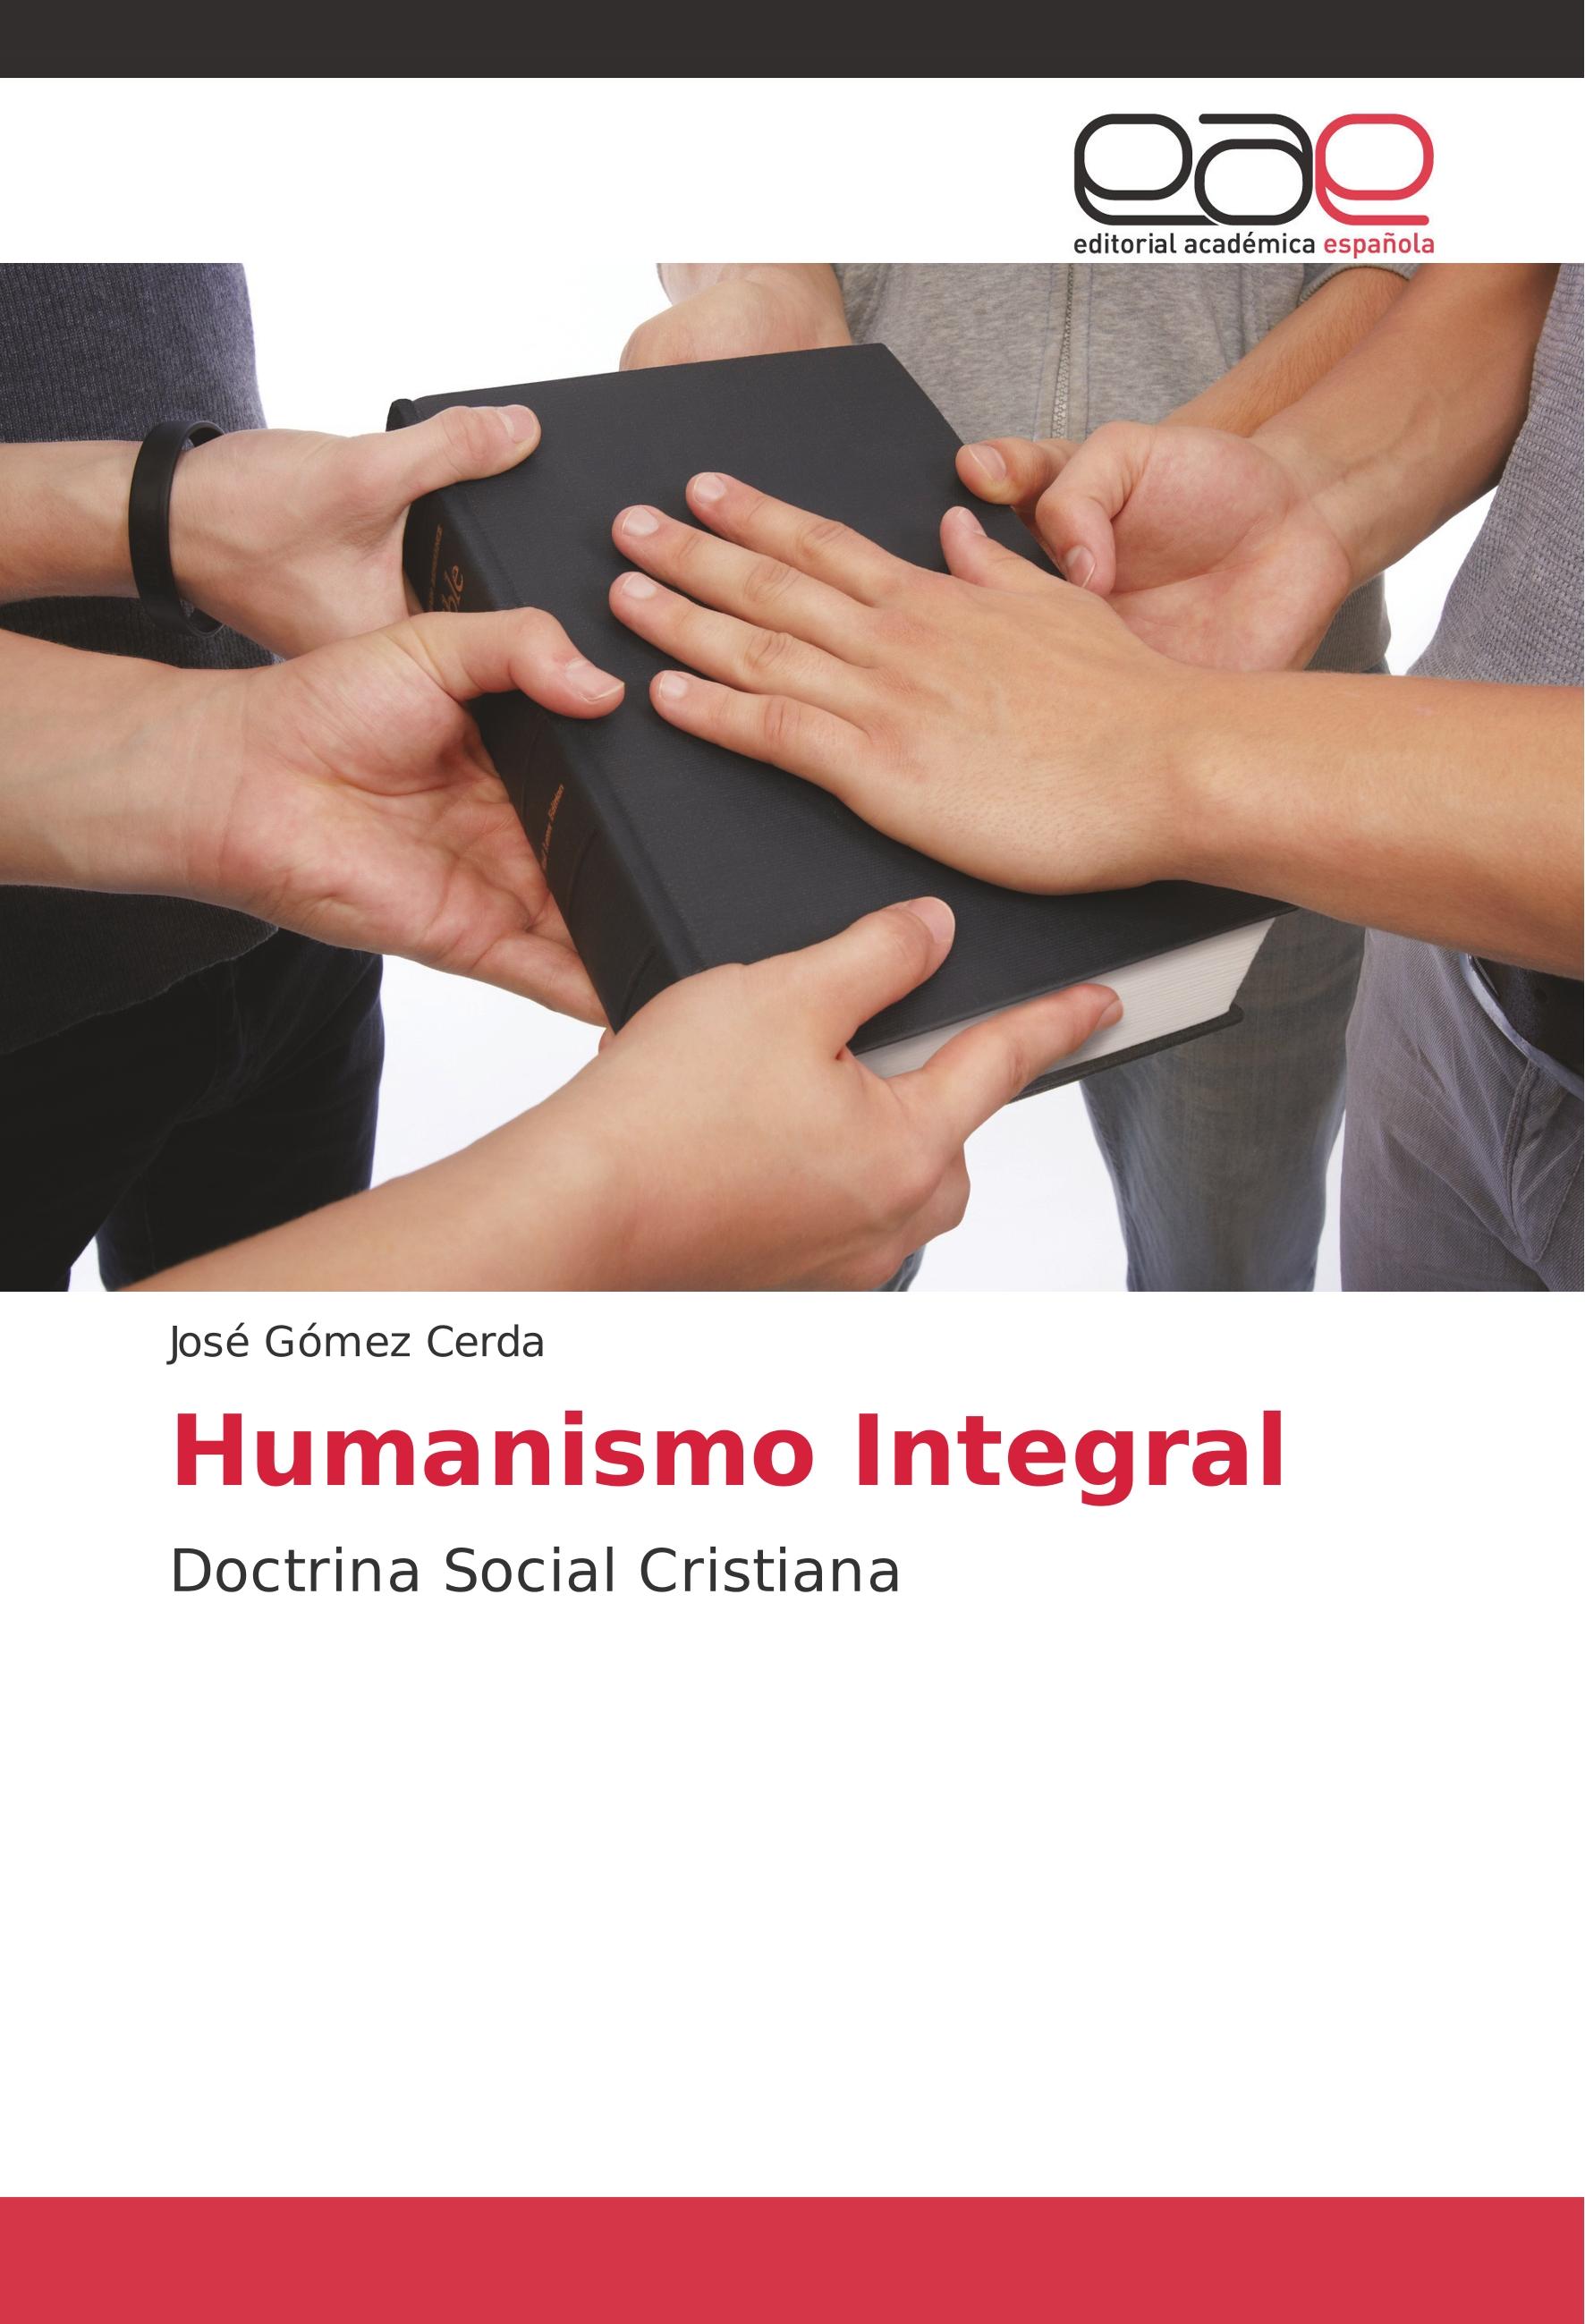 Humanismo Integral - José Gómez Cerda